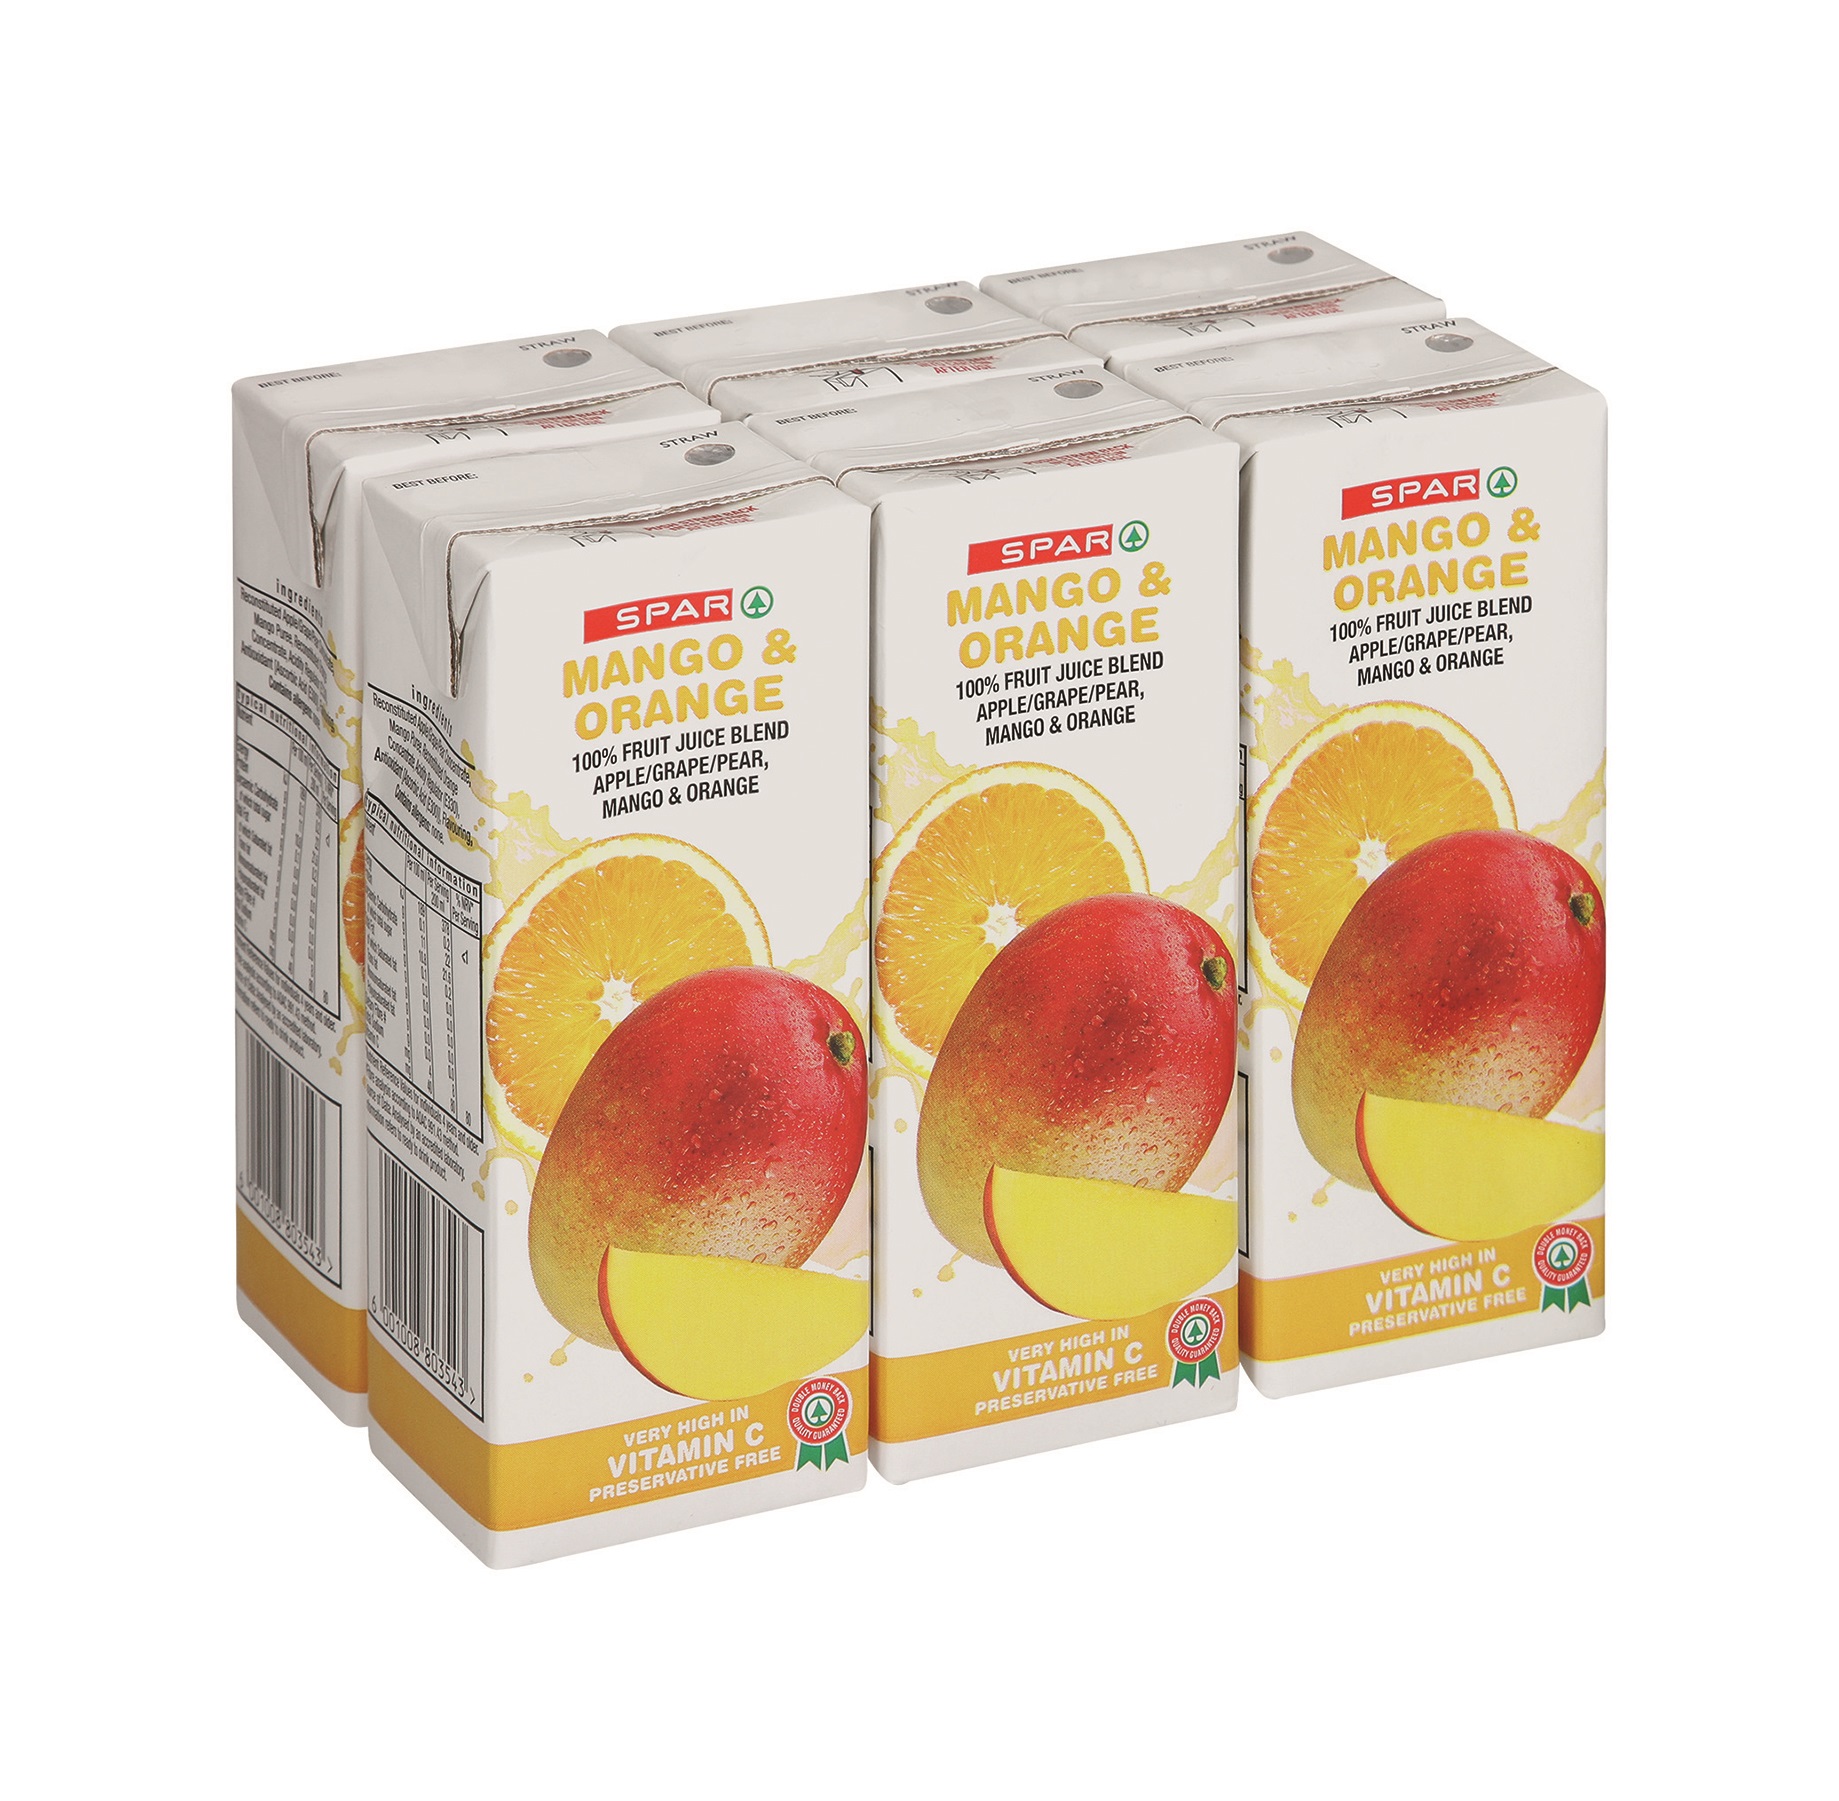 100% fruit juice blend mango & orange